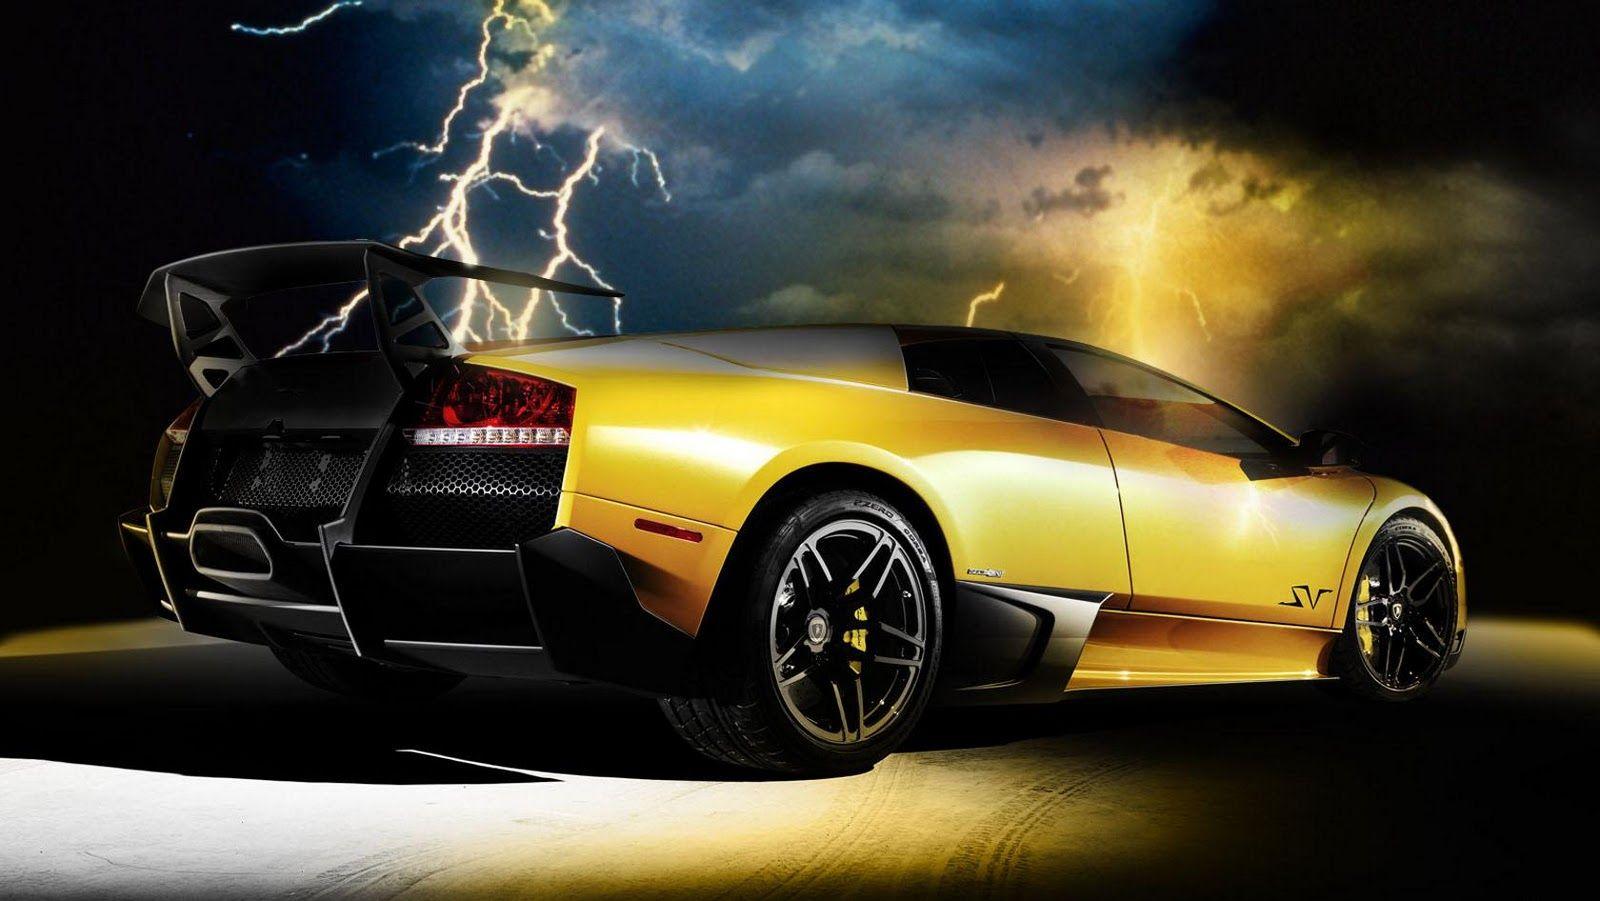 Gold Lamborghini Wallpaper Free Gold Lamborghini